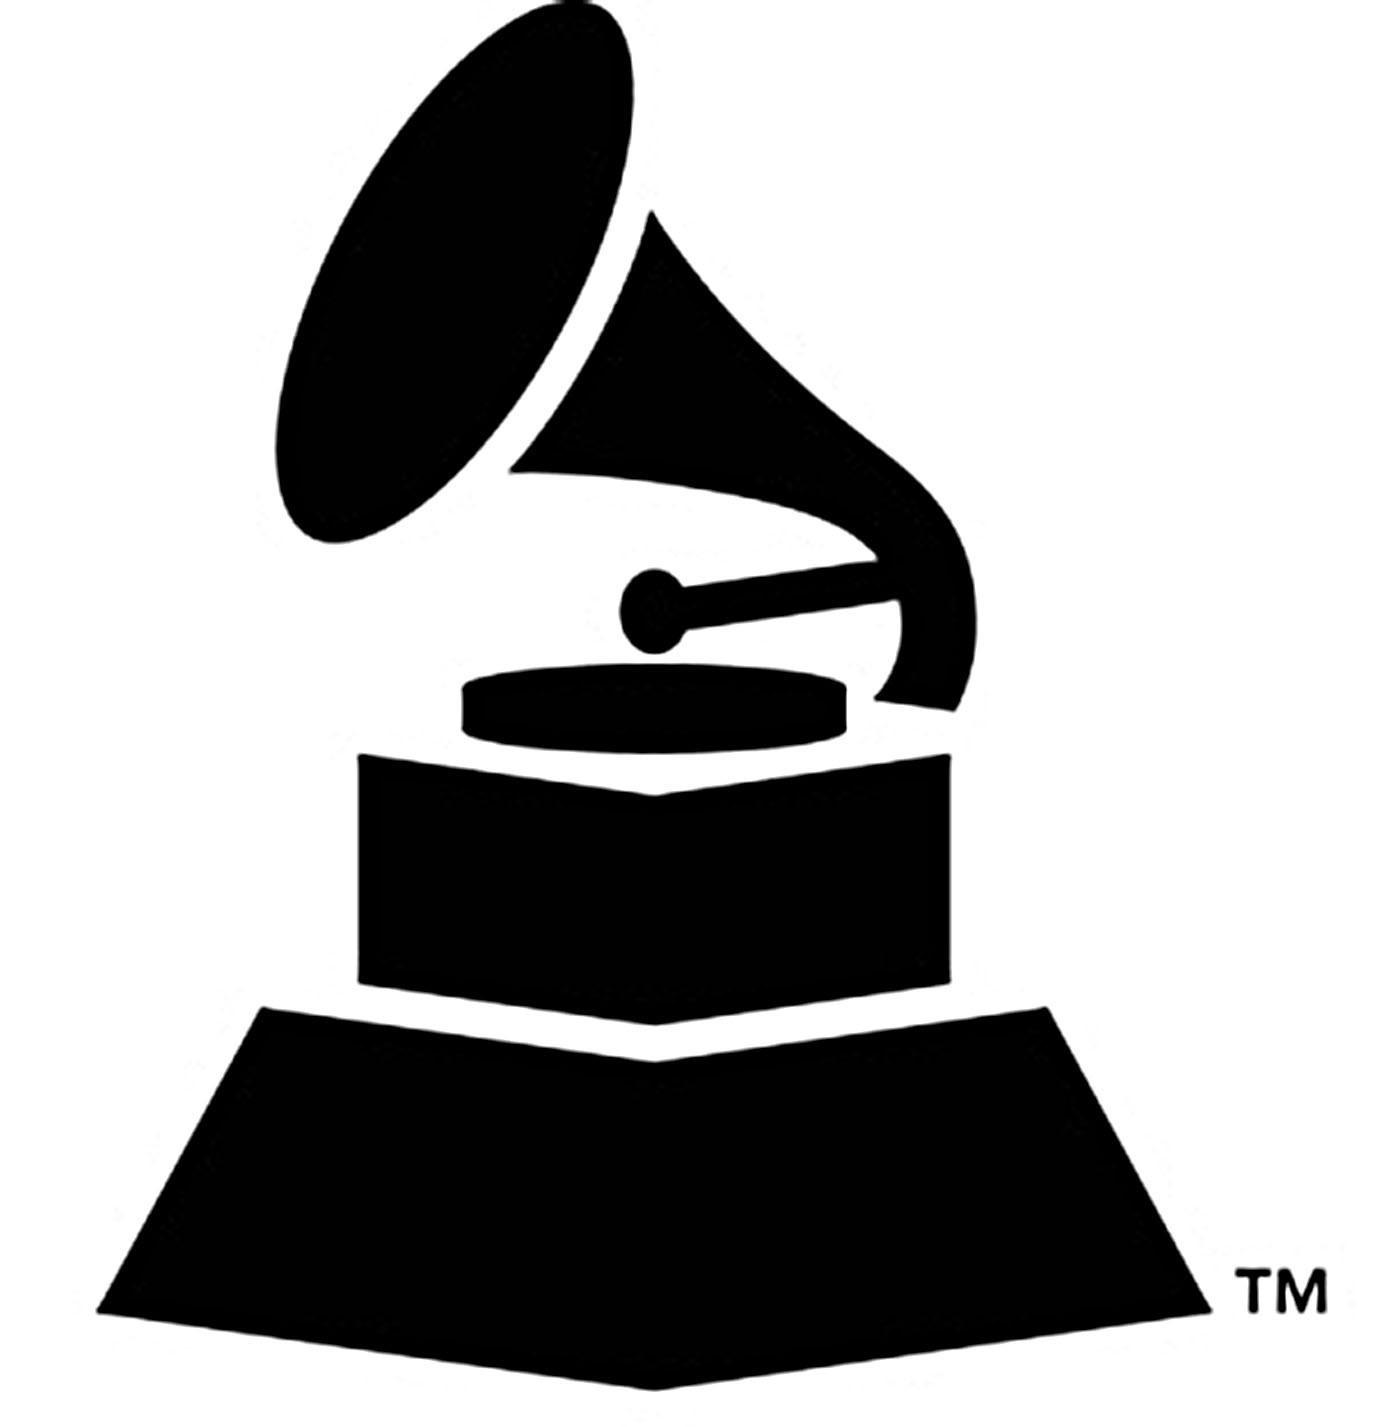 Grammys Logo - Billboard, Instagram Announce Grammy Partnership | 6AM